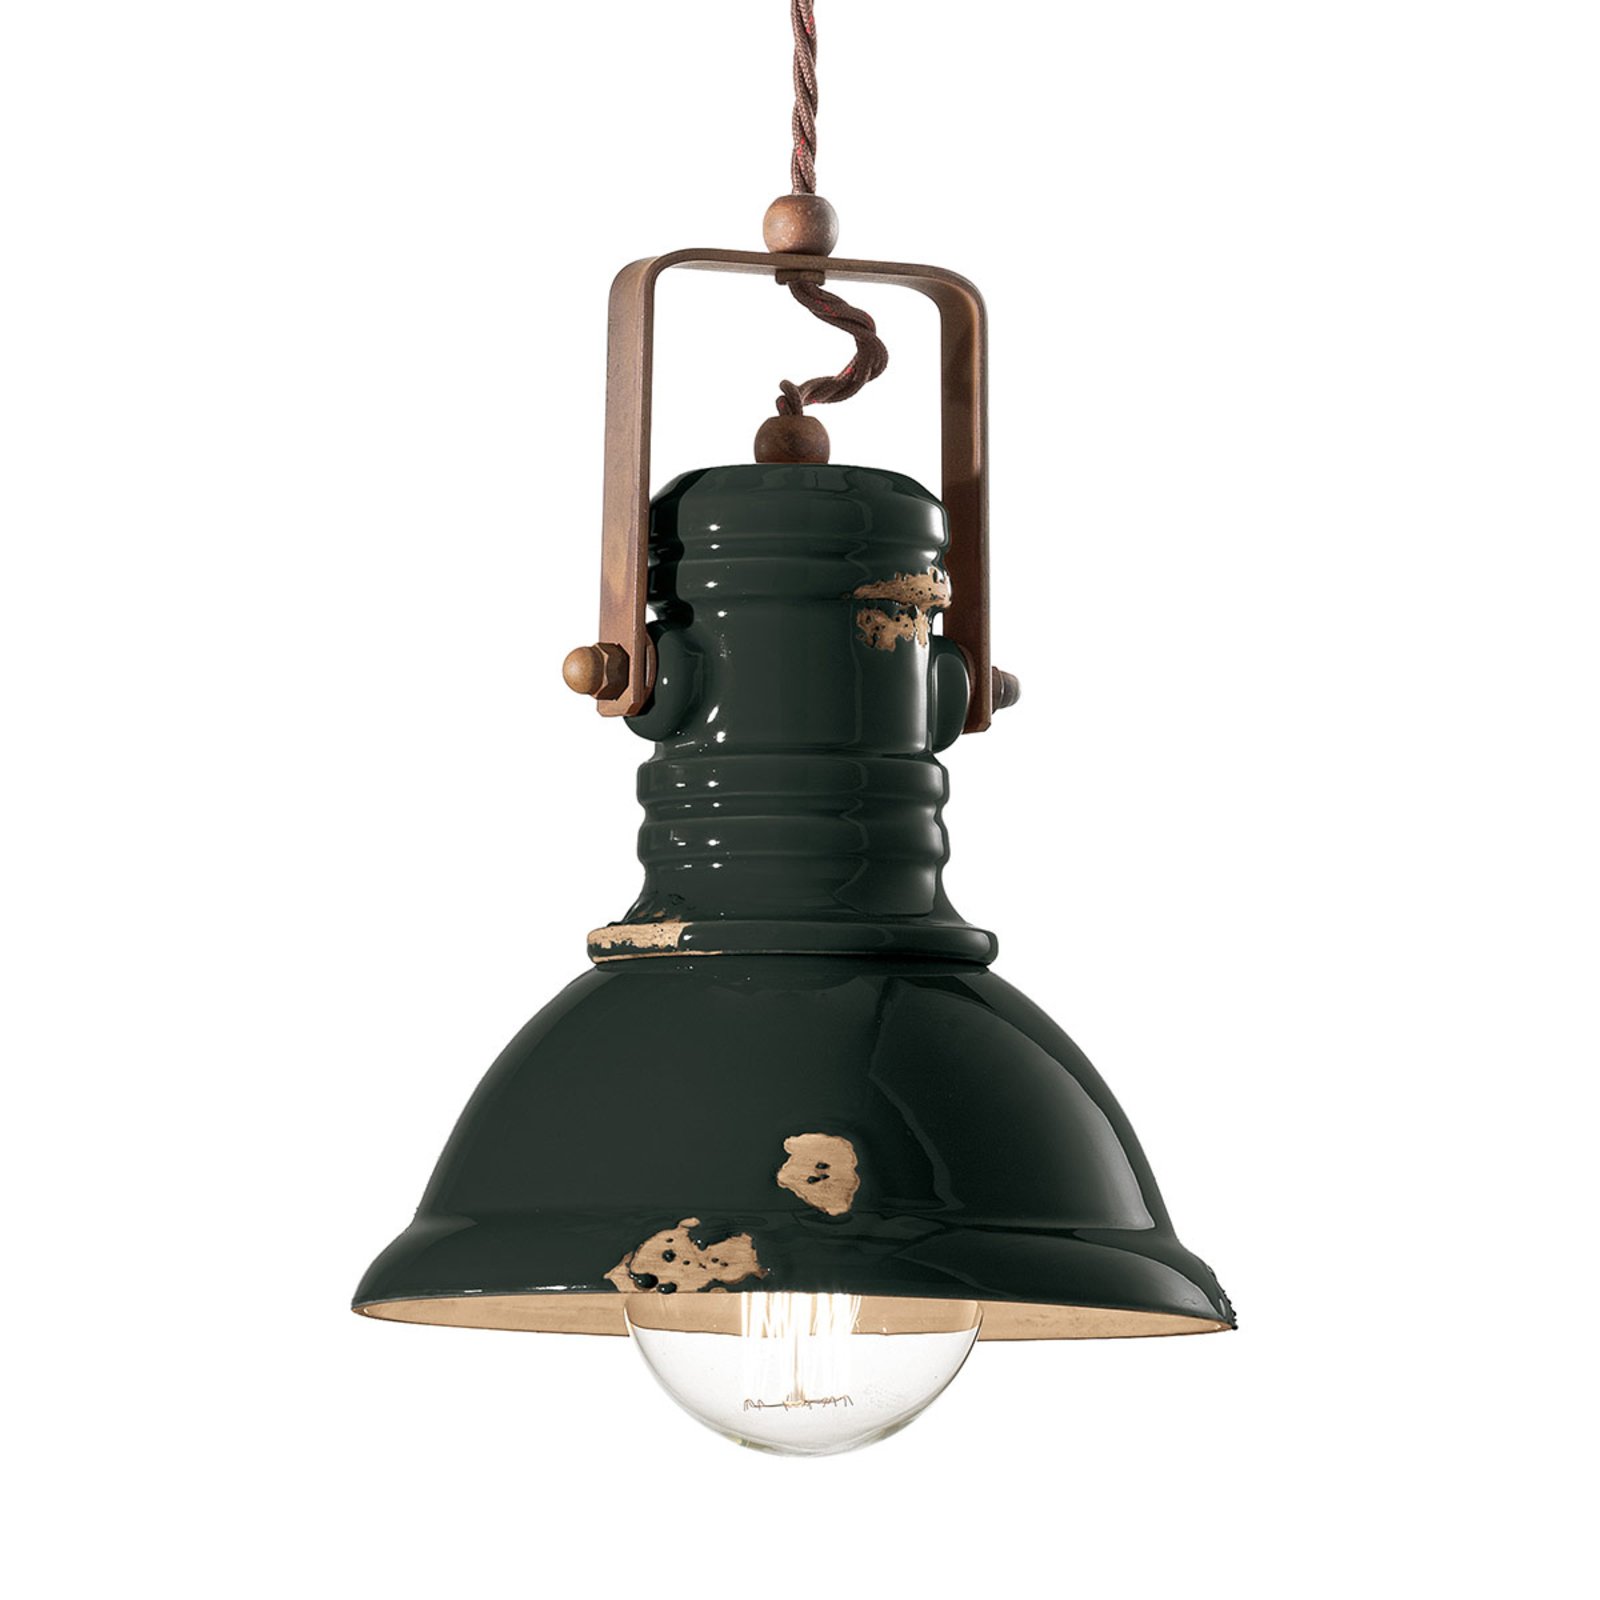 C1691 pendant light in black industrial design